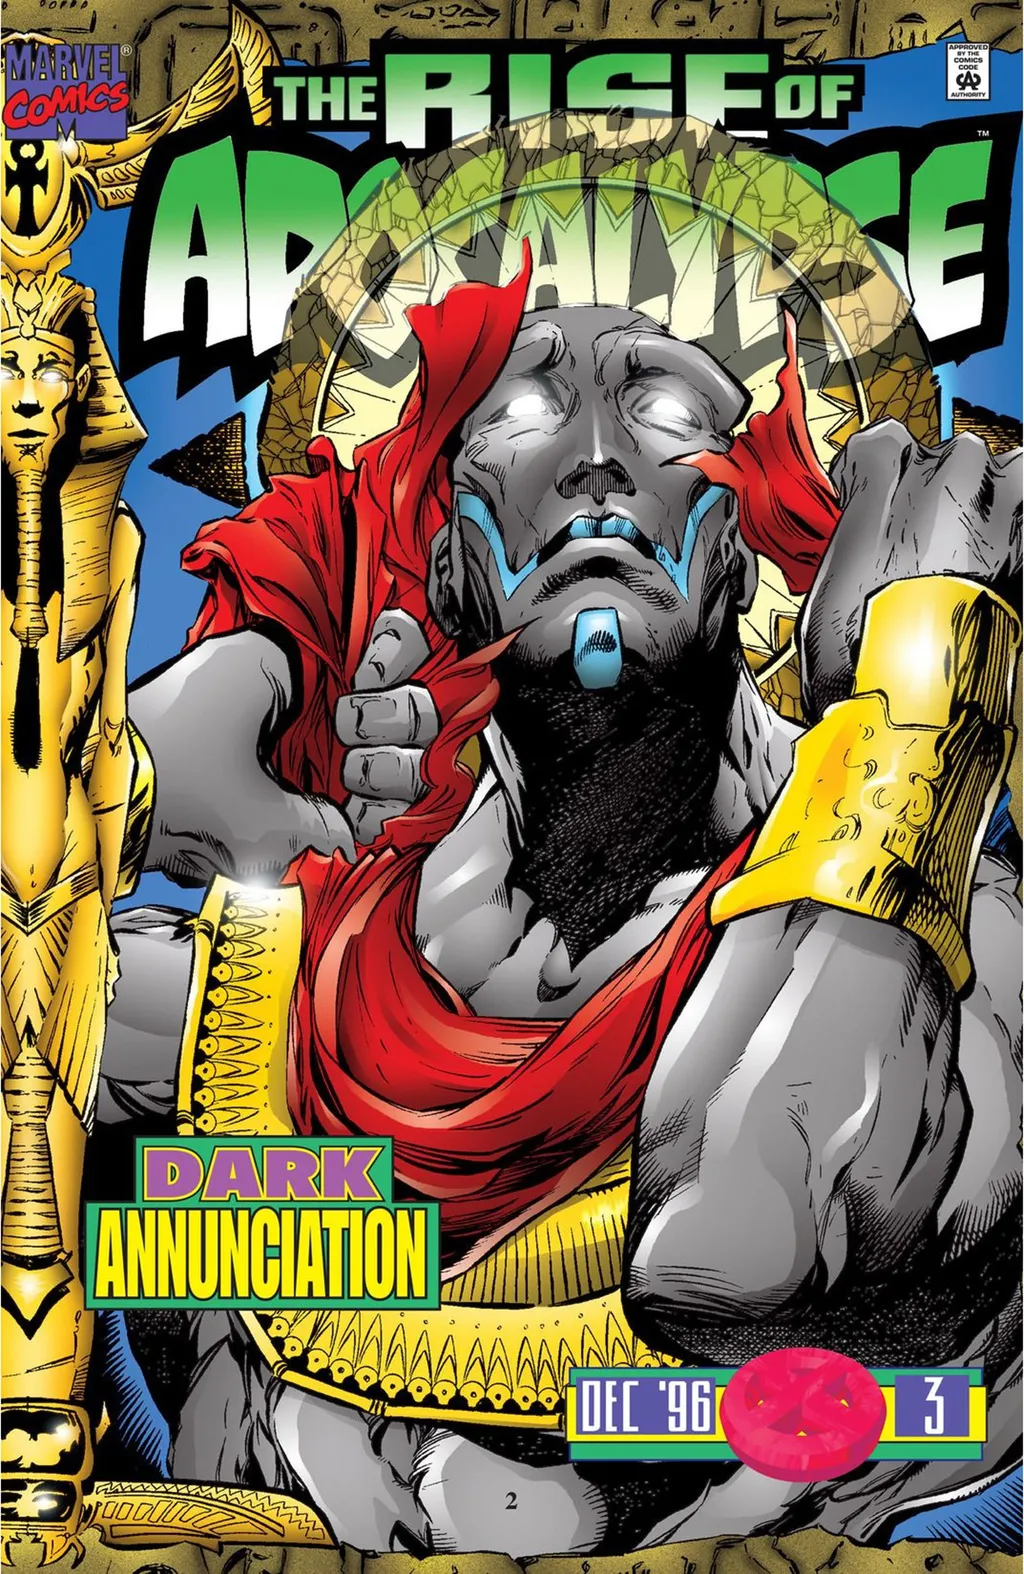 X-এ Nação Multiversal: Avengers: Kang Dynasty seria um bom titulo para o  quinto filme dos maiores heróis da terra?  / X